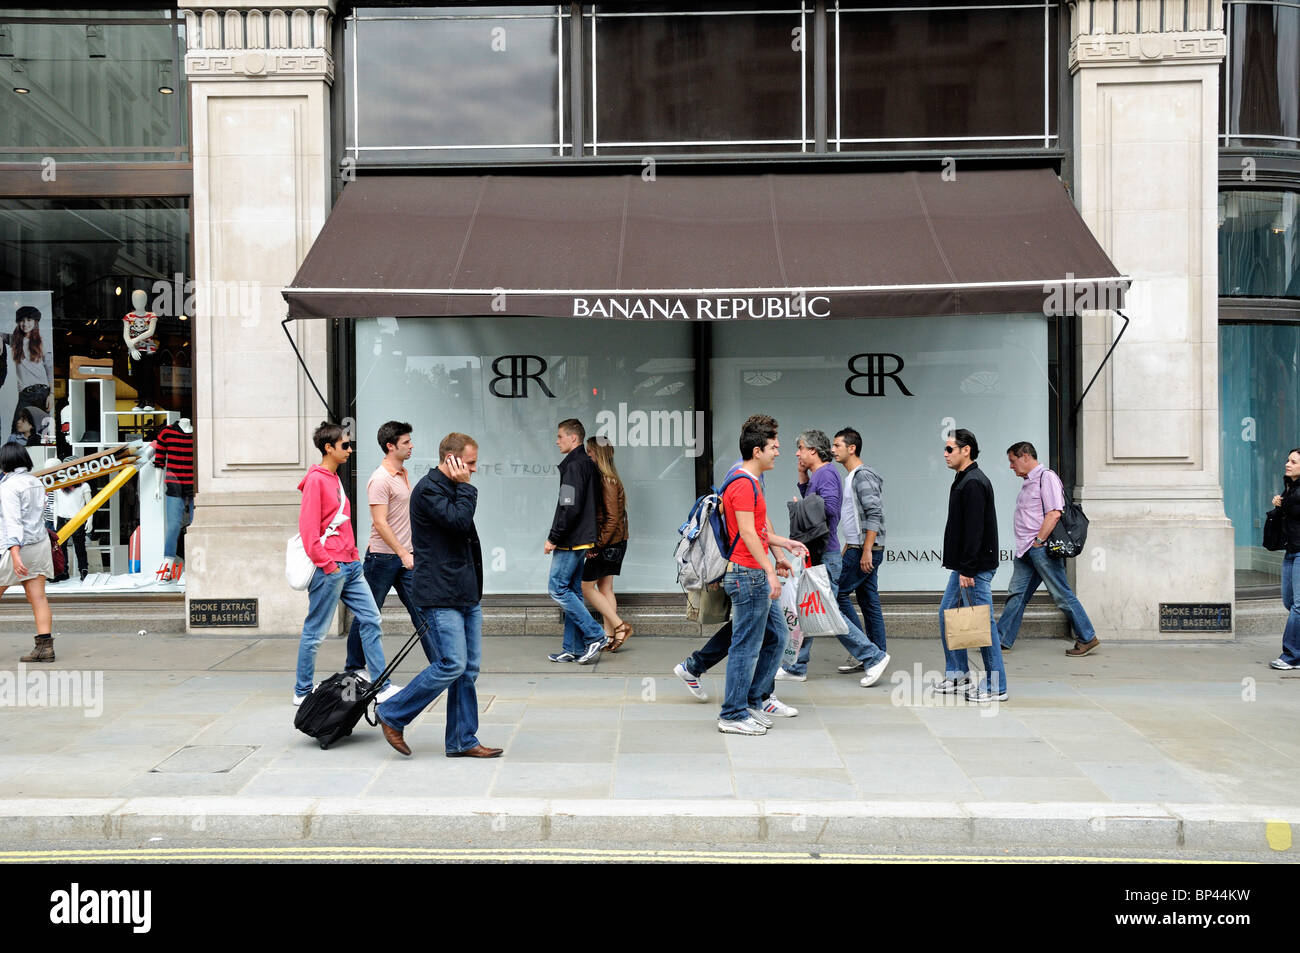 Les personnes de passage dans la région de Banana Republic Regent's Street London England Angleterre UK Banque D'Images